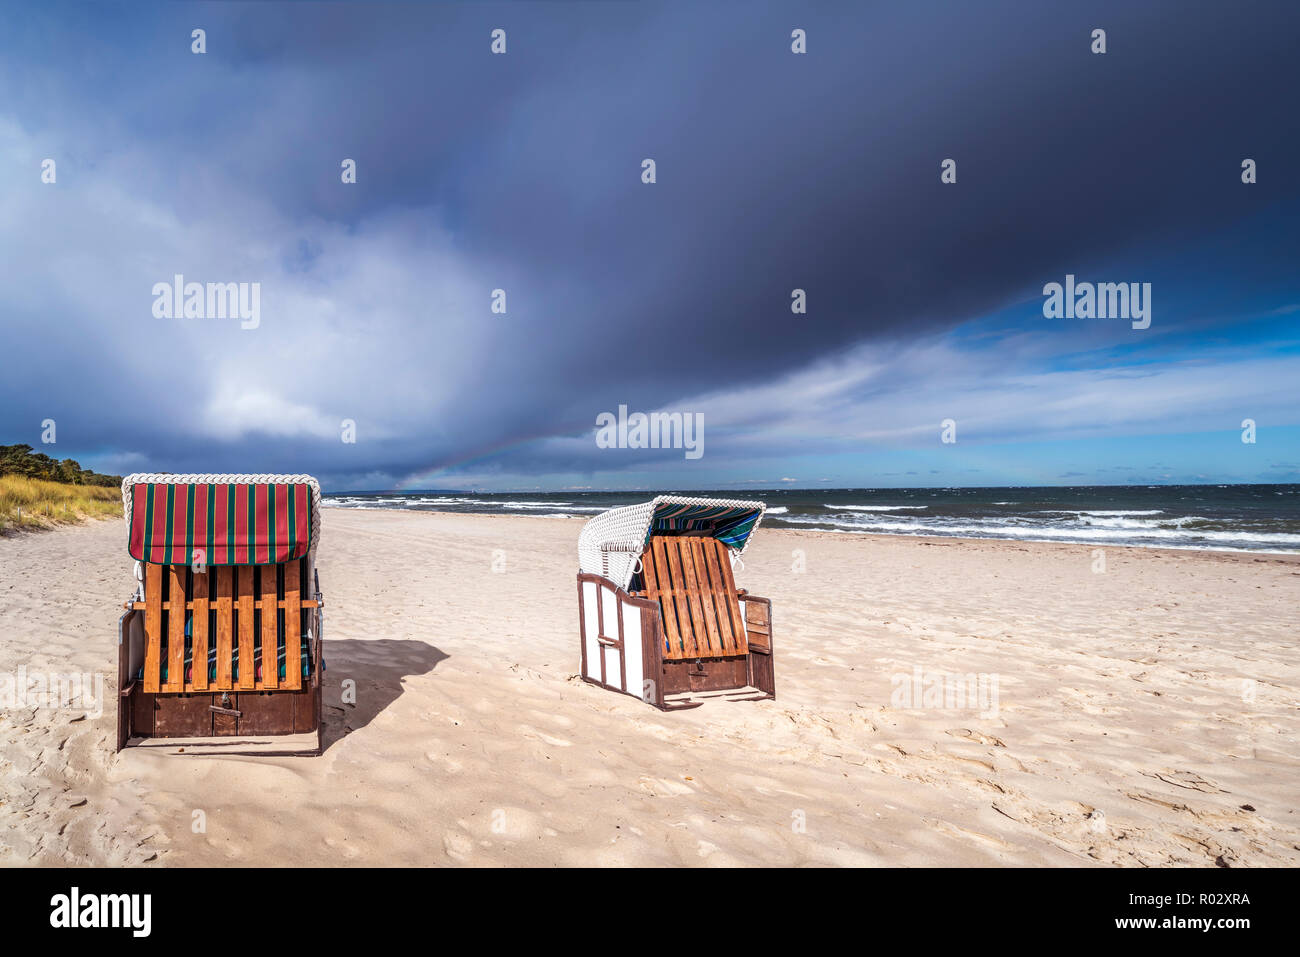 Sillas de playa en la isla de Rügen, Sellin/Baabe, Alemania | Strandkörbe auf der Insel Rügen, Sellin/Baabe Foto de stock